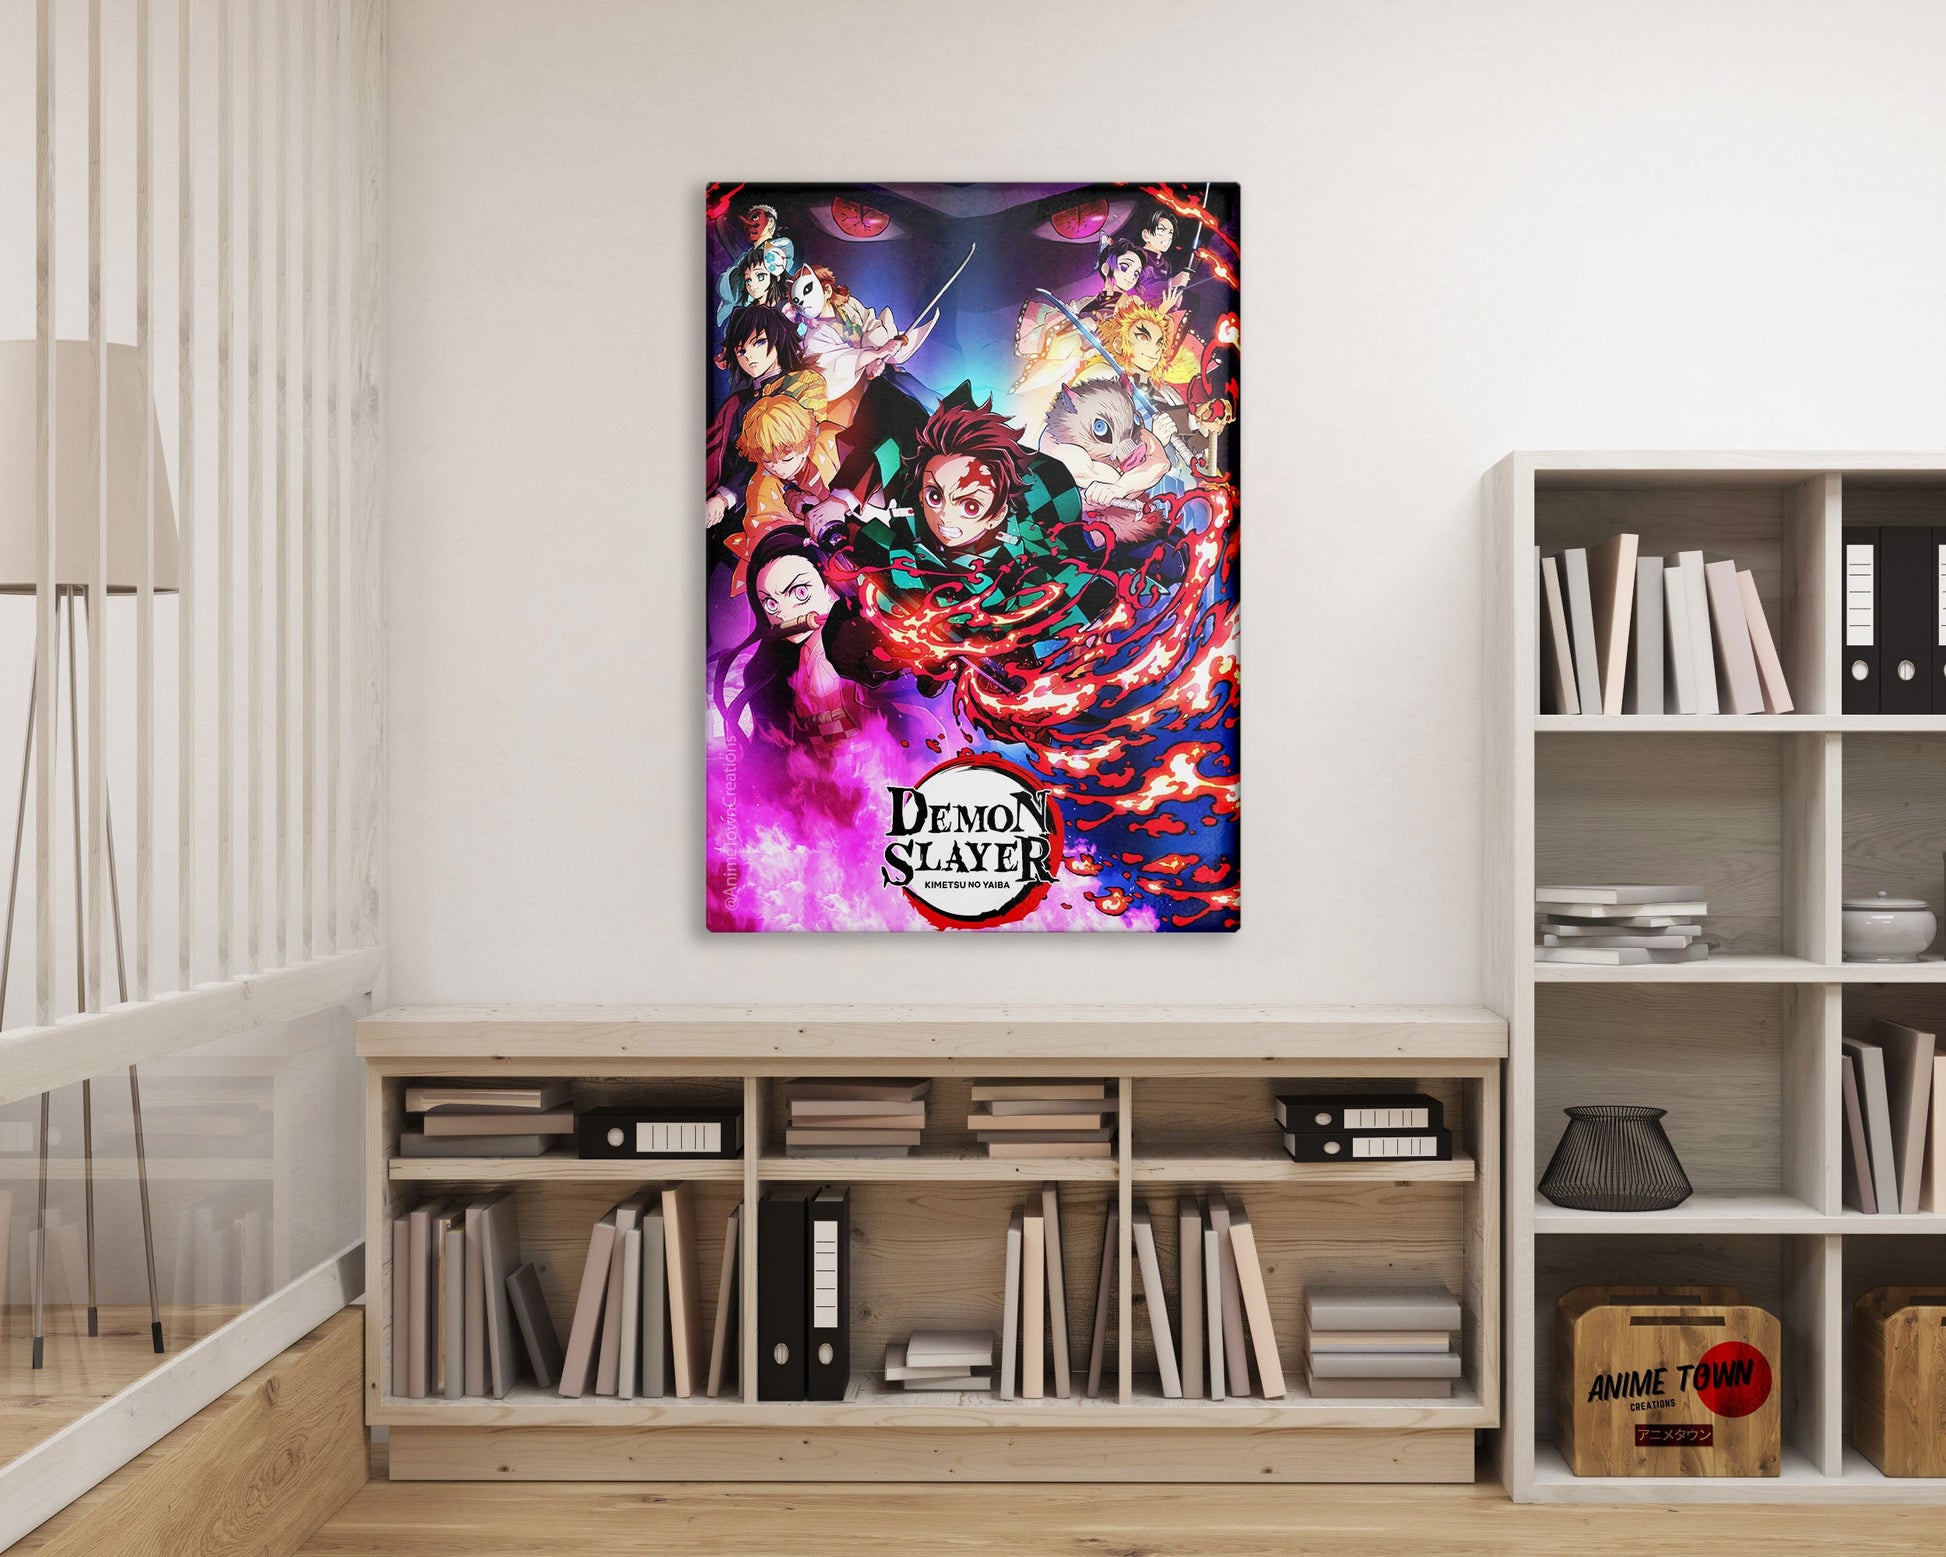 Demon Slayer Manga Posters Online - Shop Unique Metal Prints, Pictures,  Paintings